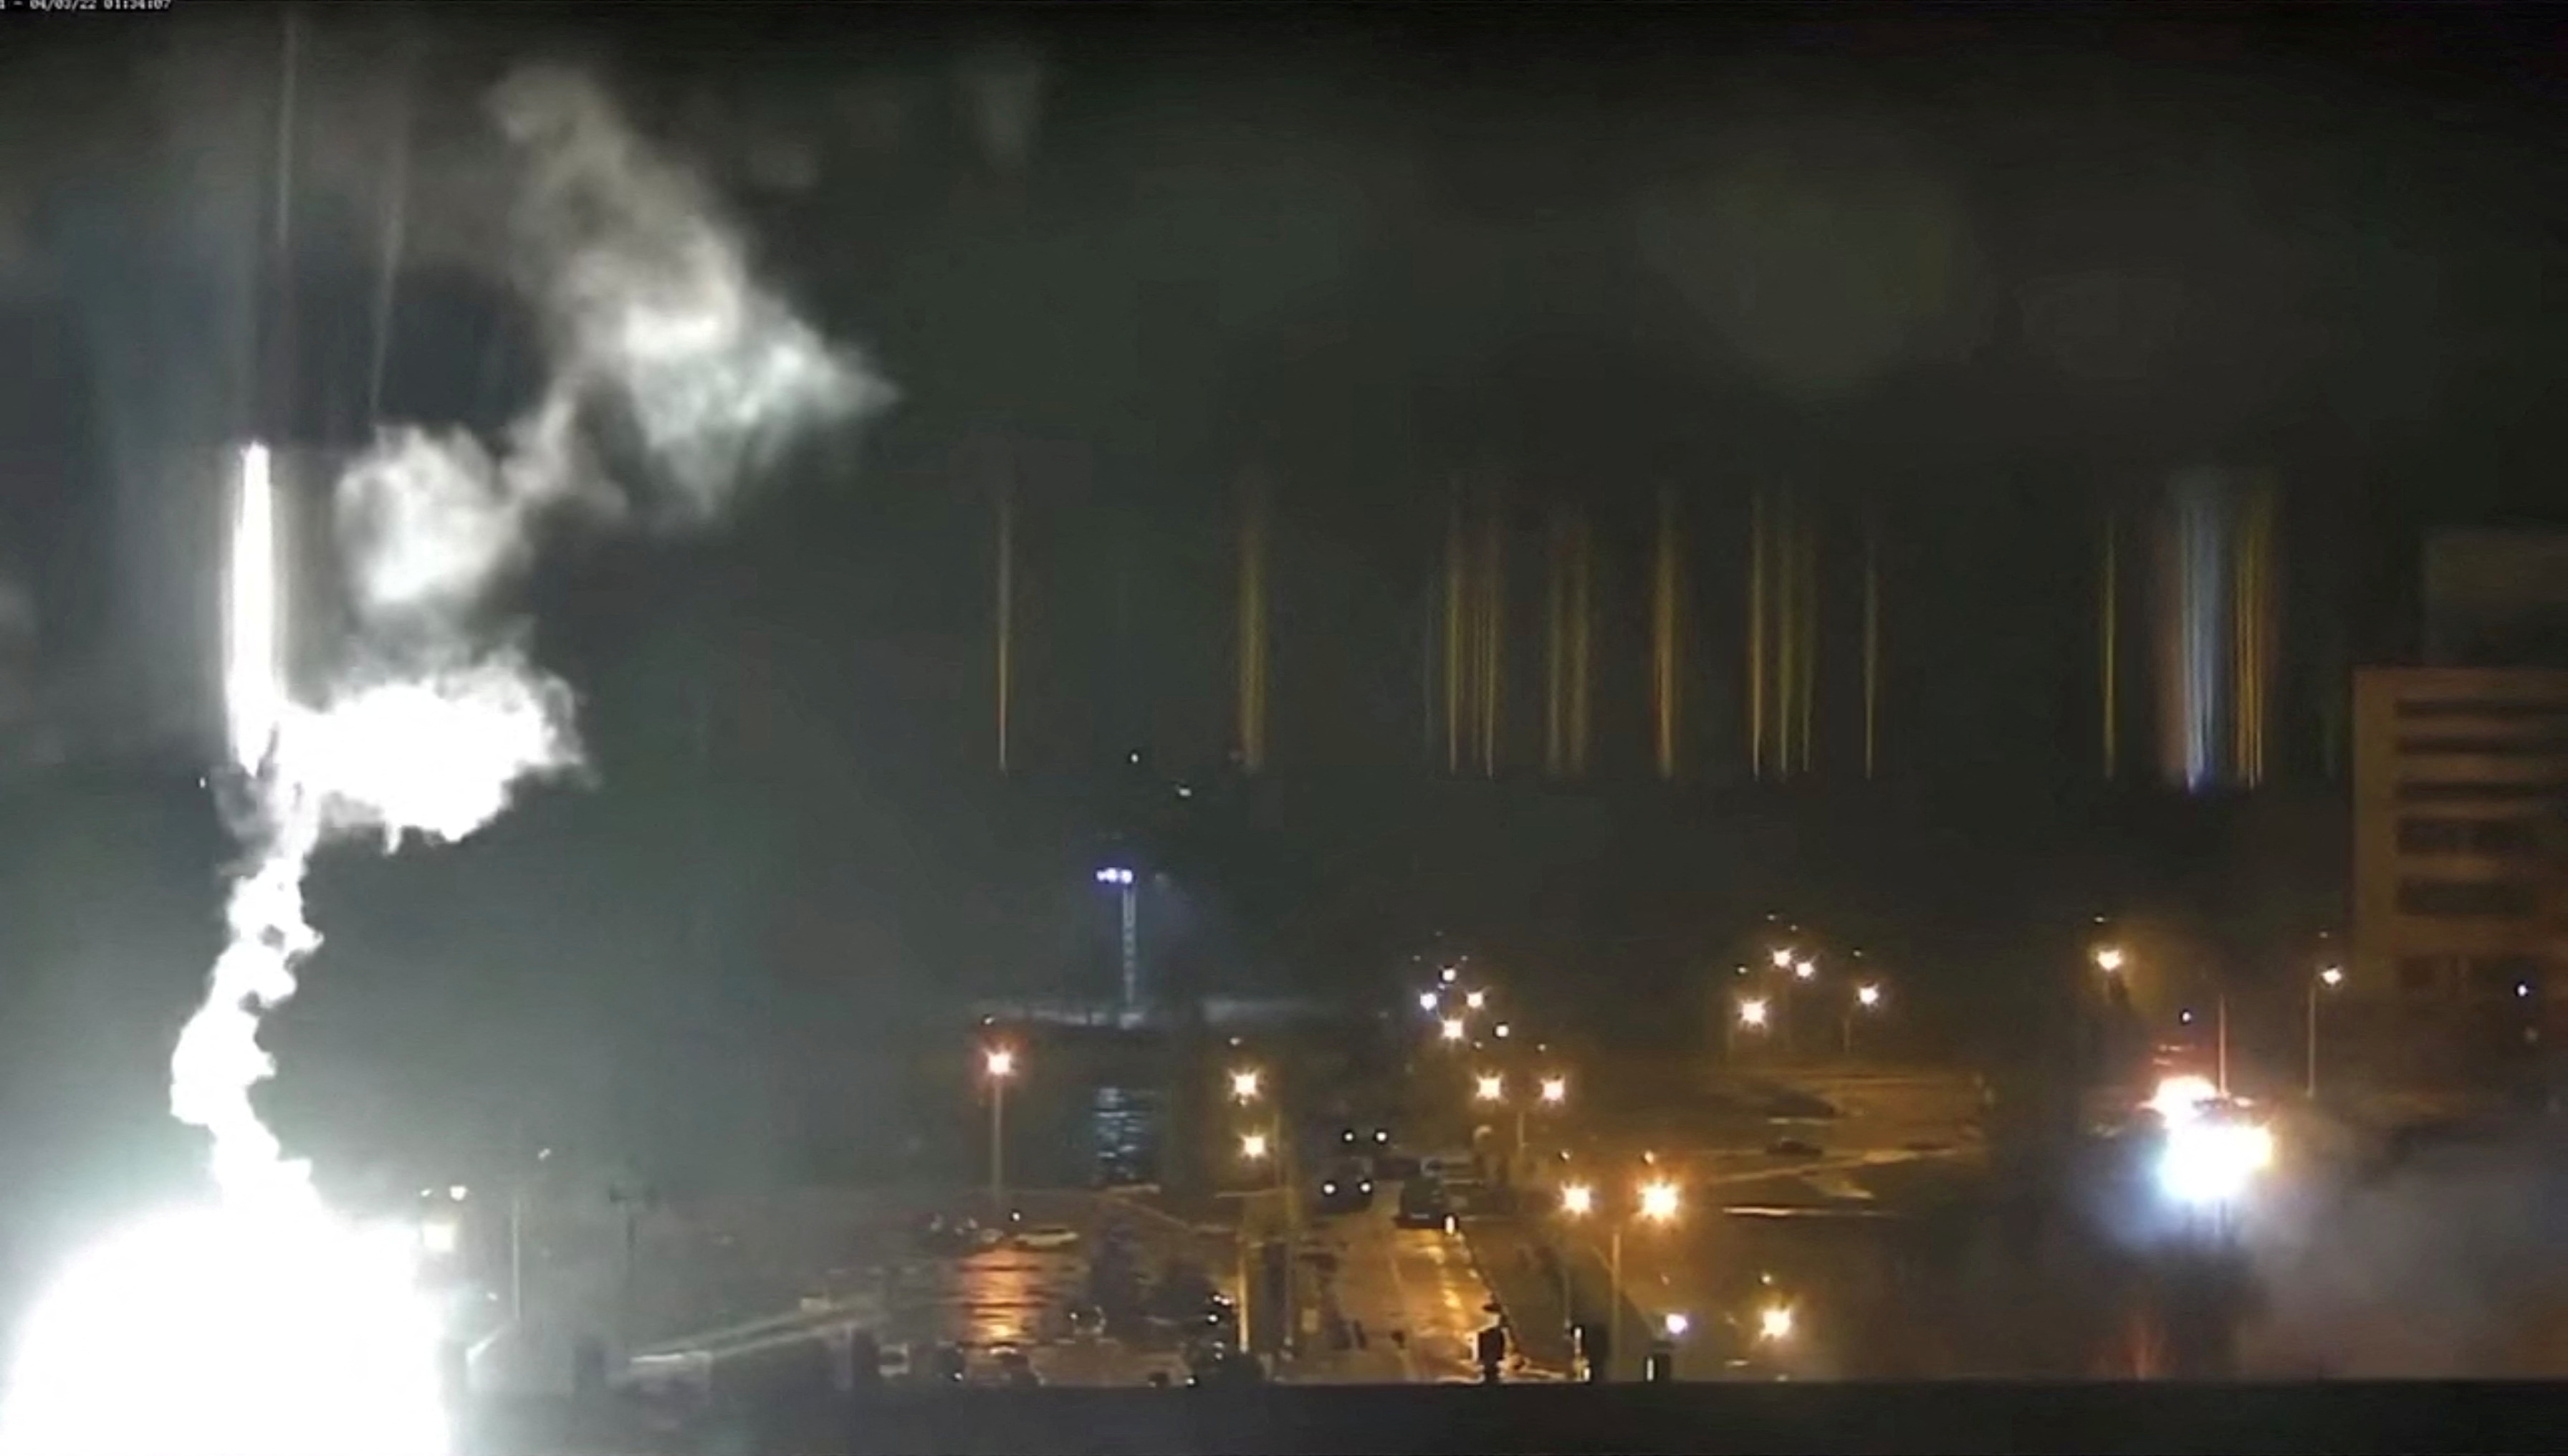 La central nuclear se encuentra prendida fuego (Zaporizhzhya NPP via YouTube/via REUTERS)